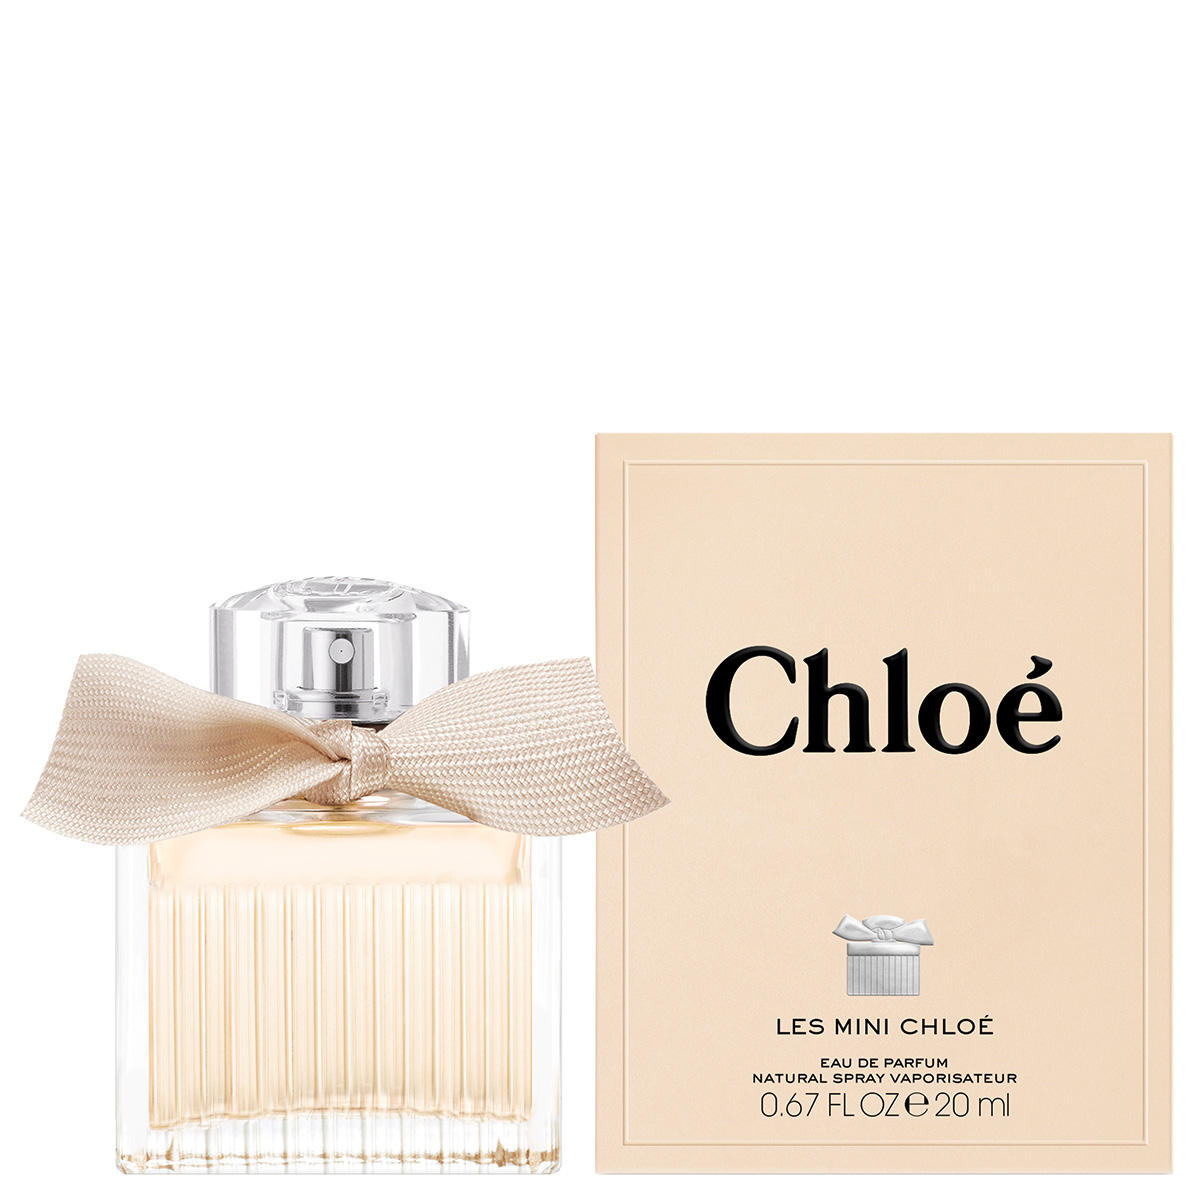 Chloé Chloé Eau de Parfum 20 ml - 2